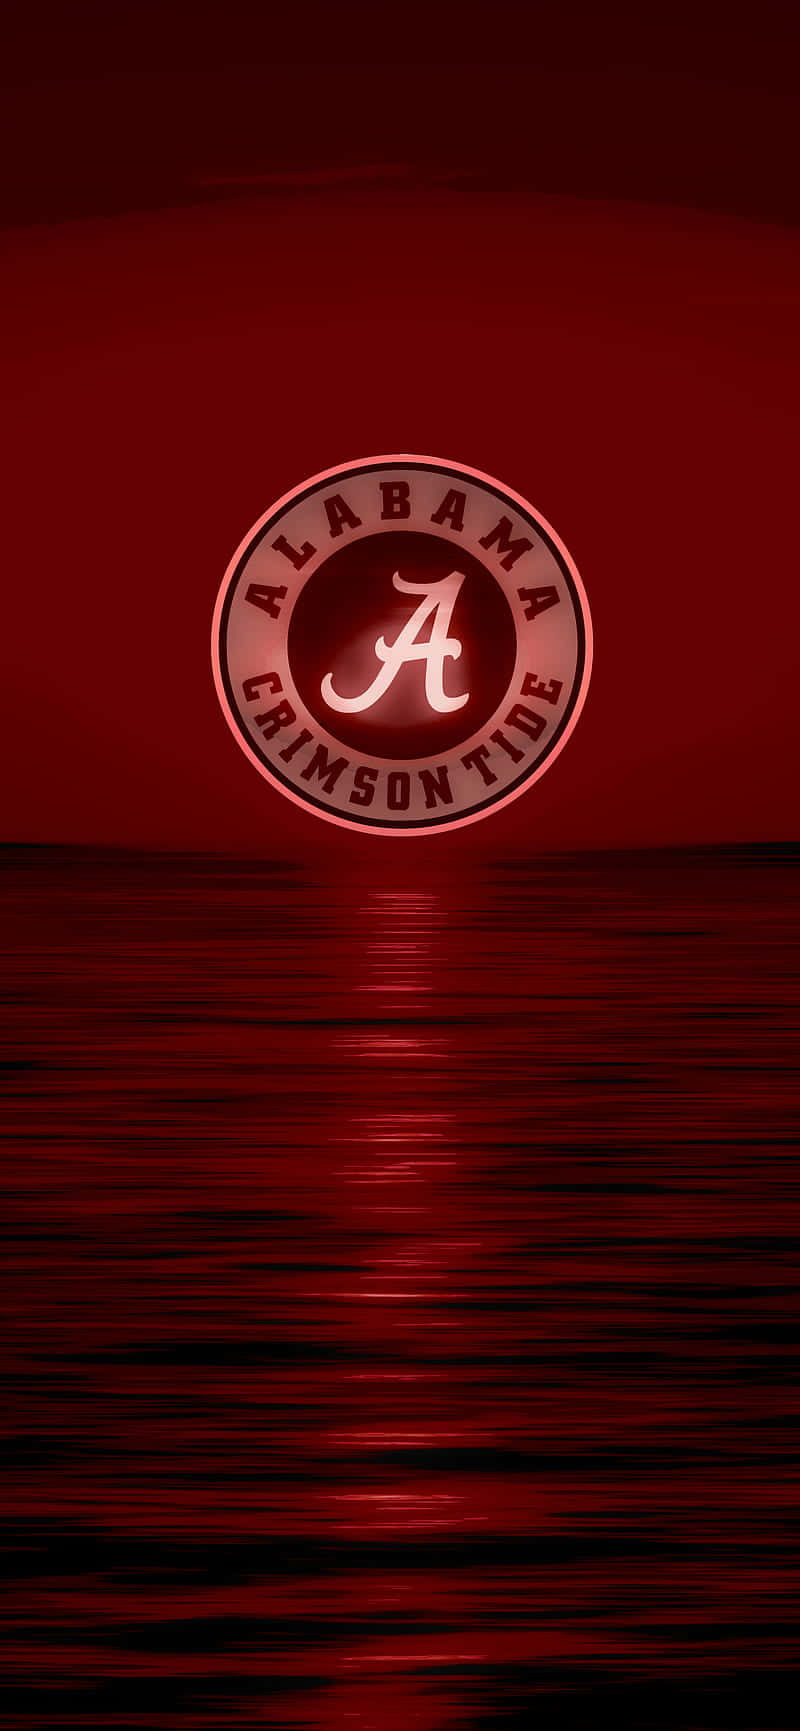 Visaditt Stöd För Alabama Football Genom Denna Lysande Och Livliga Iphone-bakgrundsbild. Wallpaper